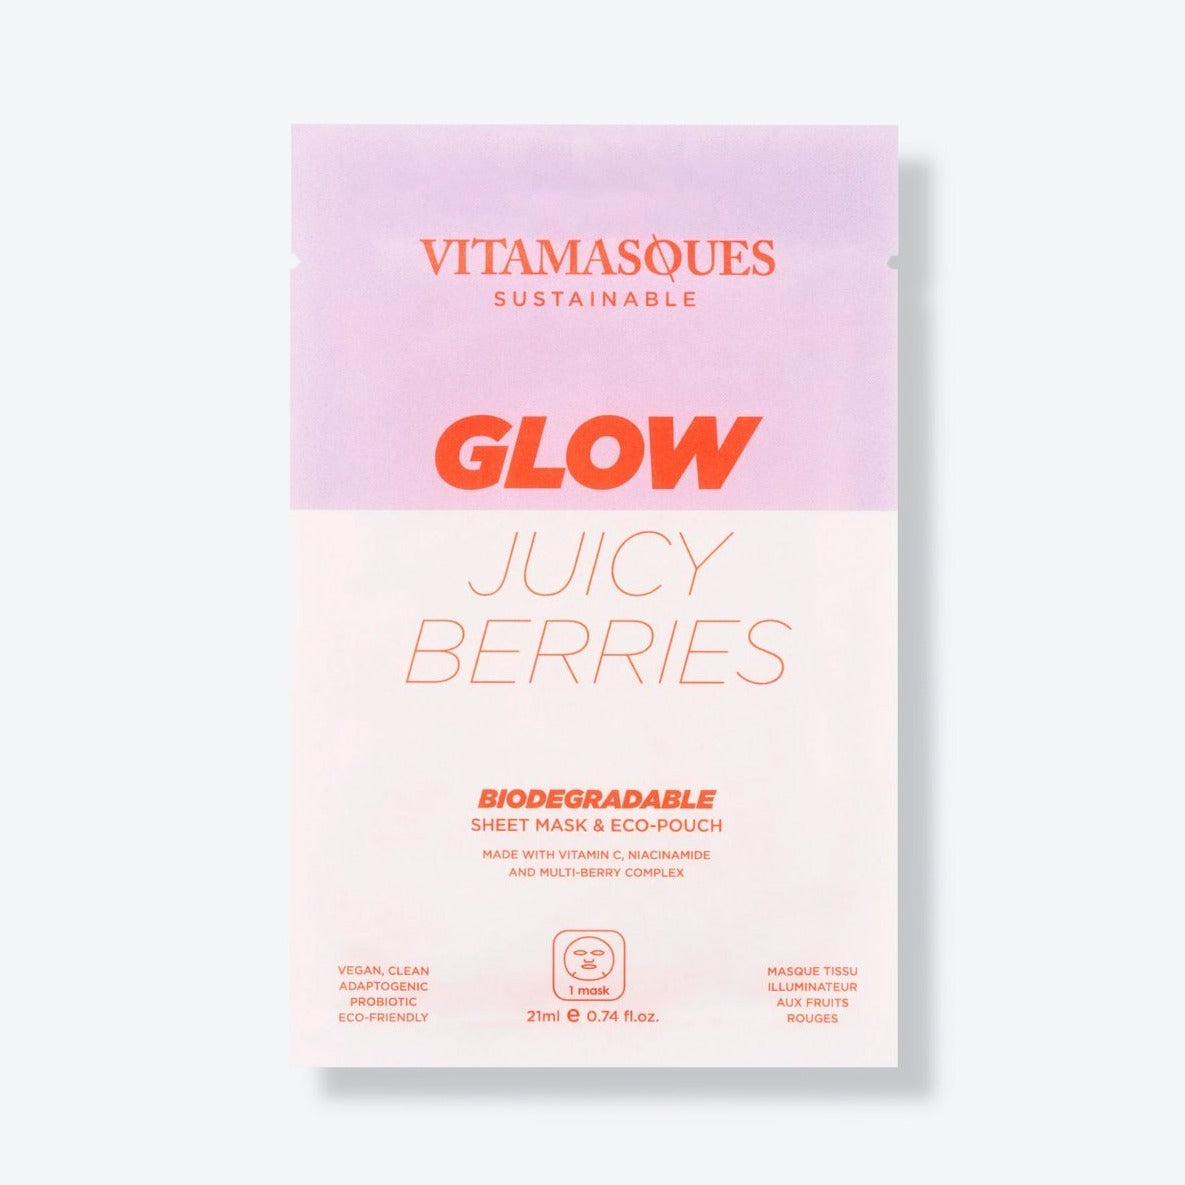 Glow Juicy Berries Sheet Mask